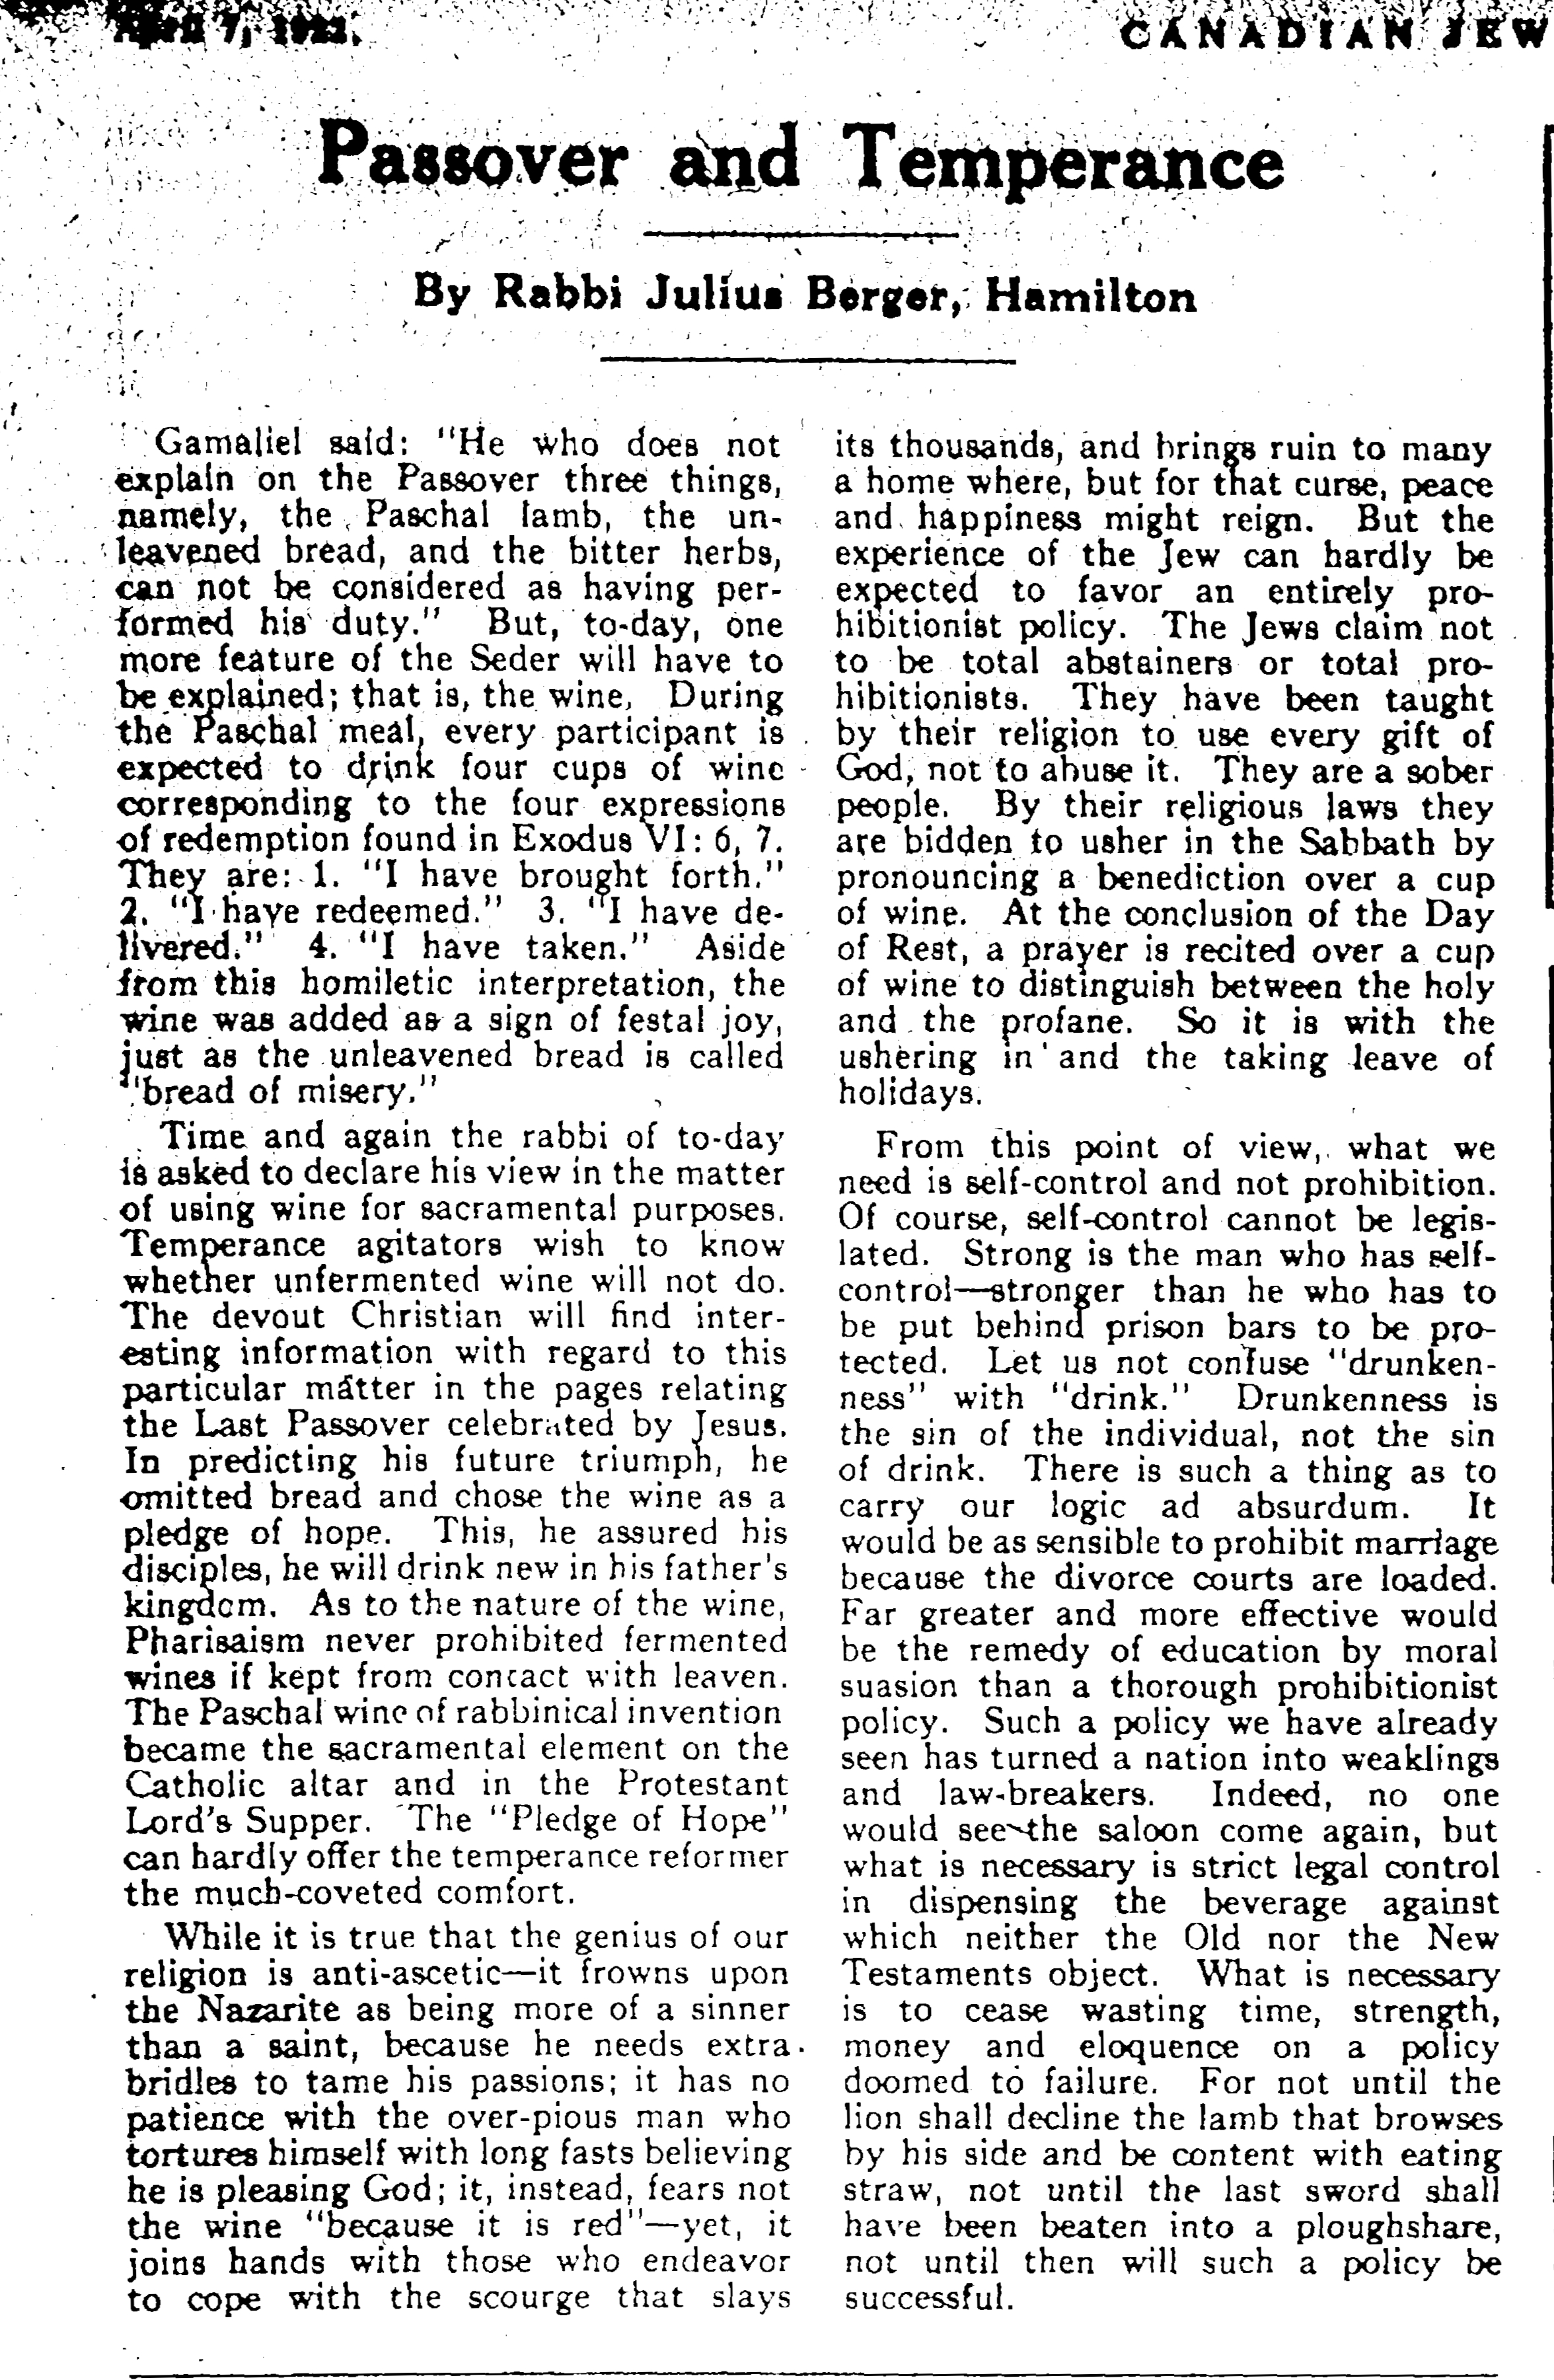 Canadian Jewish Review, April 7, 1922